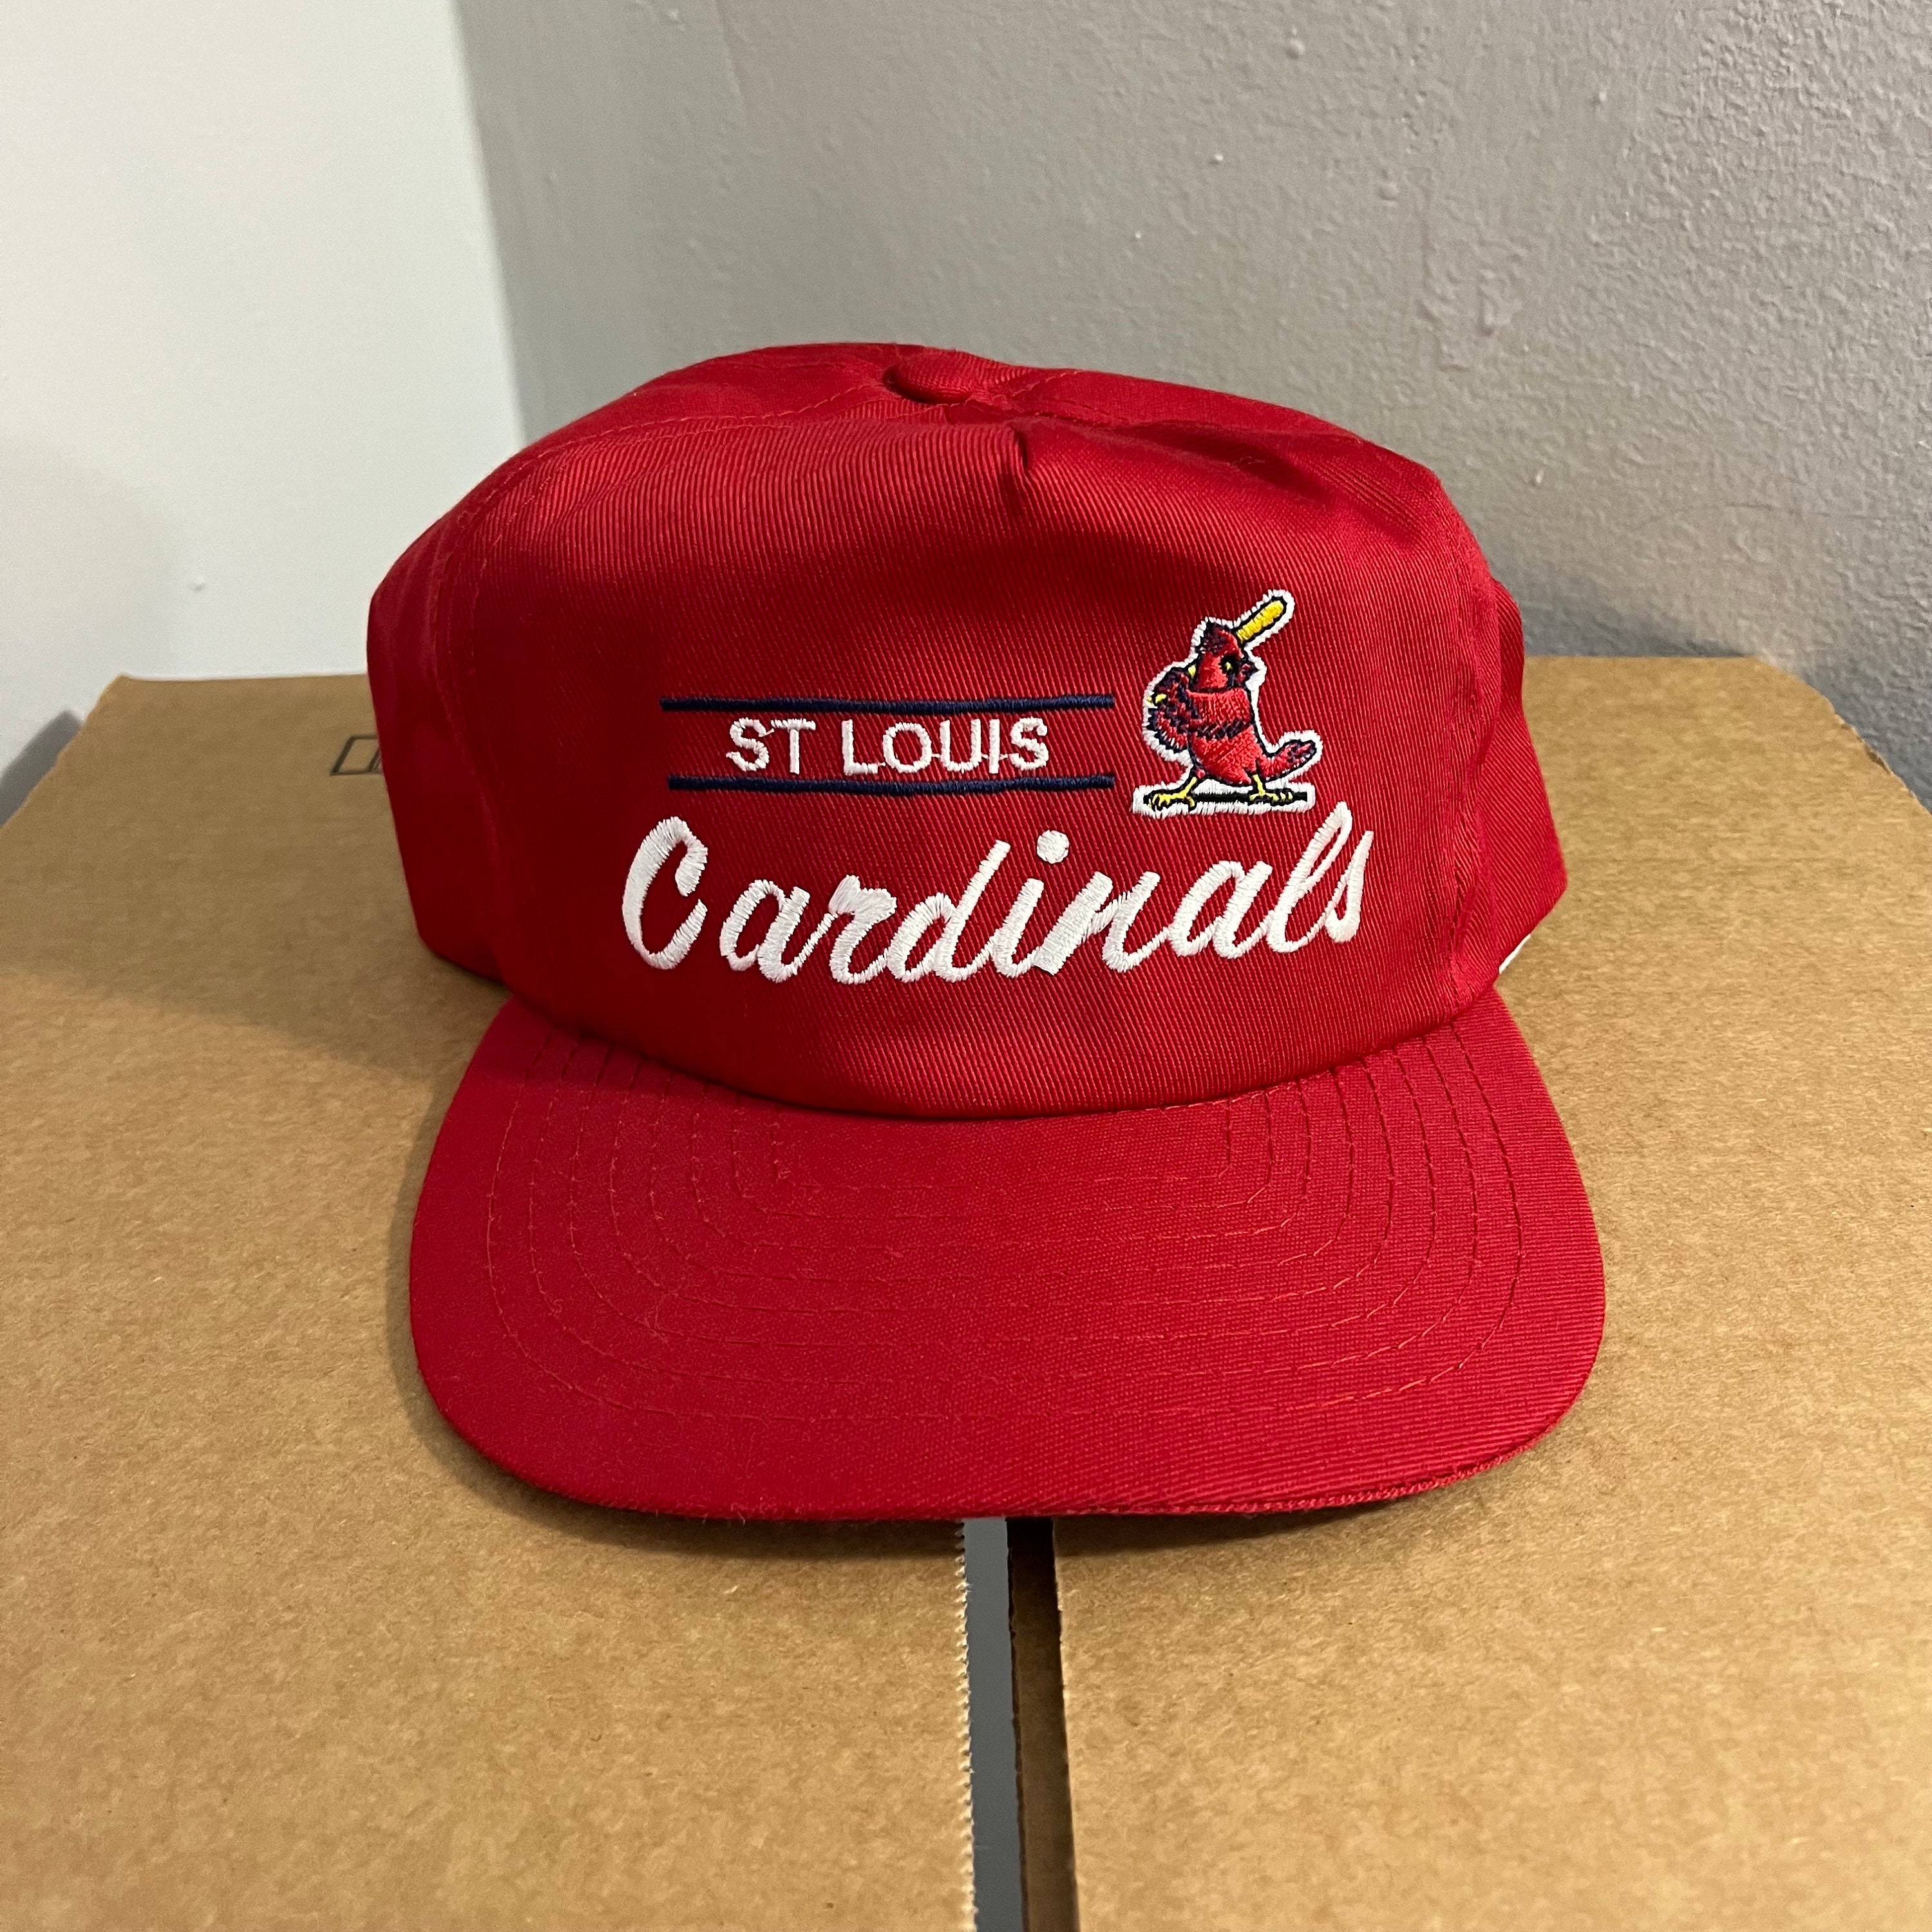 St. Louis Cardinals Women's Cursive Colorblock Slippers